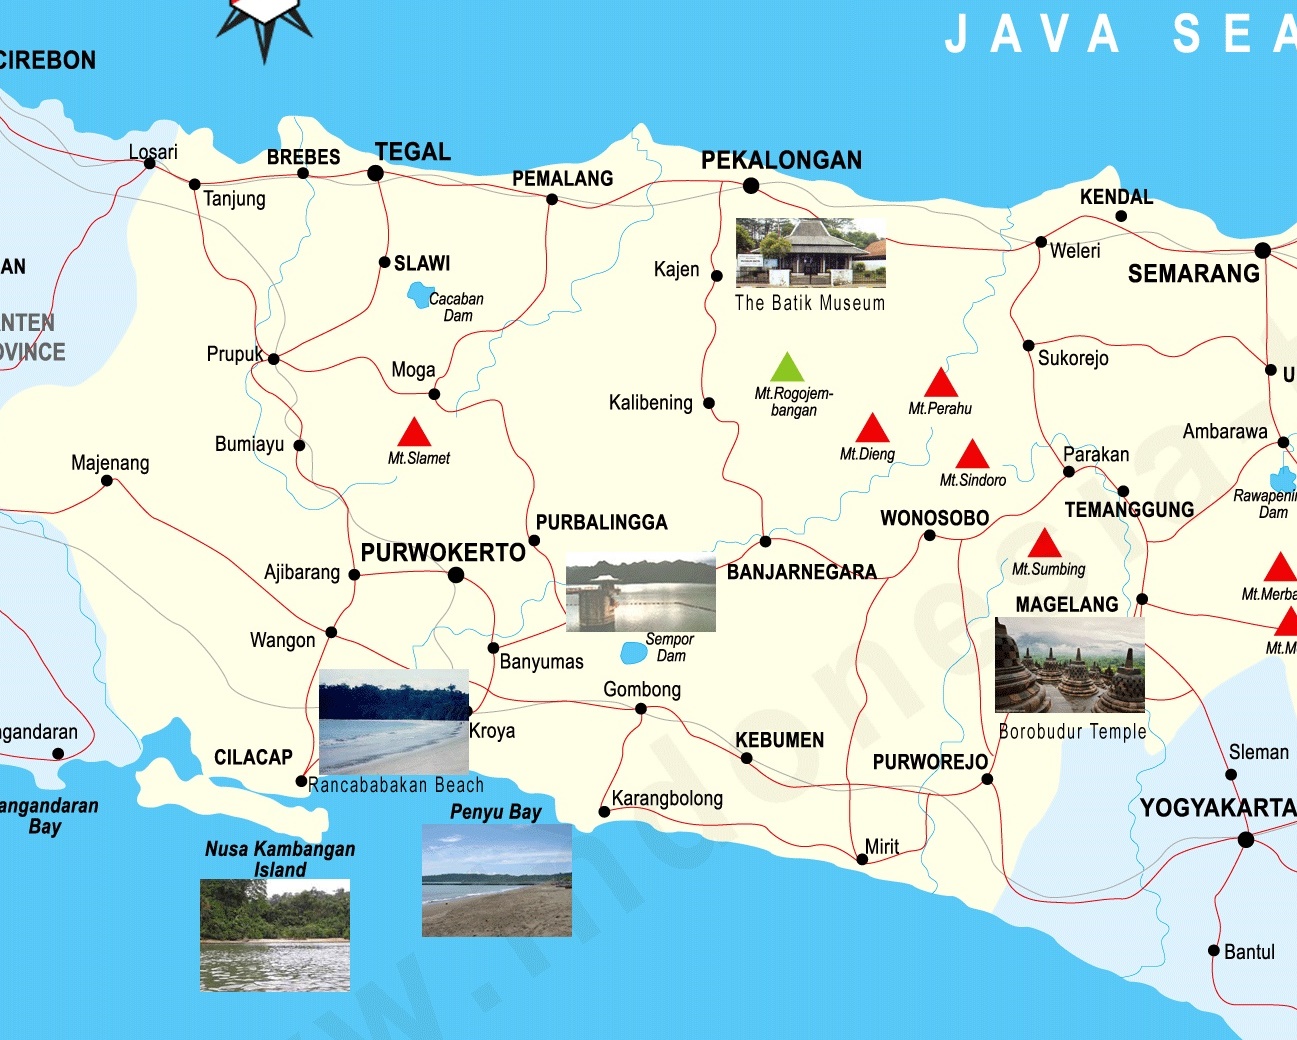 Peta Jogjakarta Jogja Tourism Map Wisata Solo Peta Pe